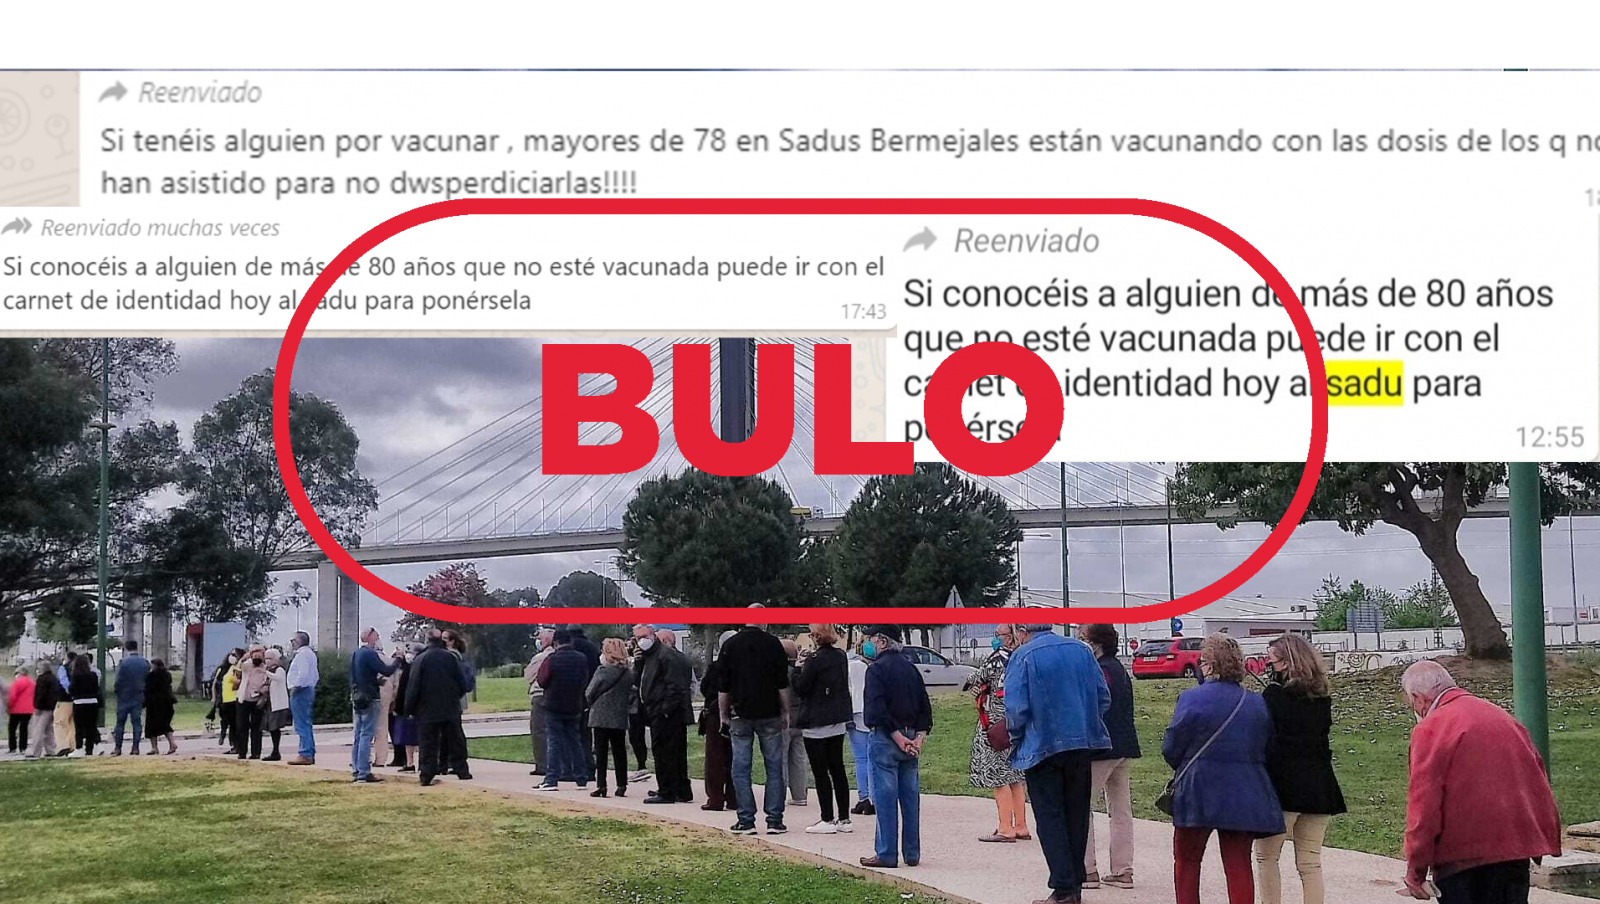 Imagen de las colas en el polideportivo de Los Bermejales y los mensajes de Whatsapp con el sello bulo en rojo de VerificaRTVE